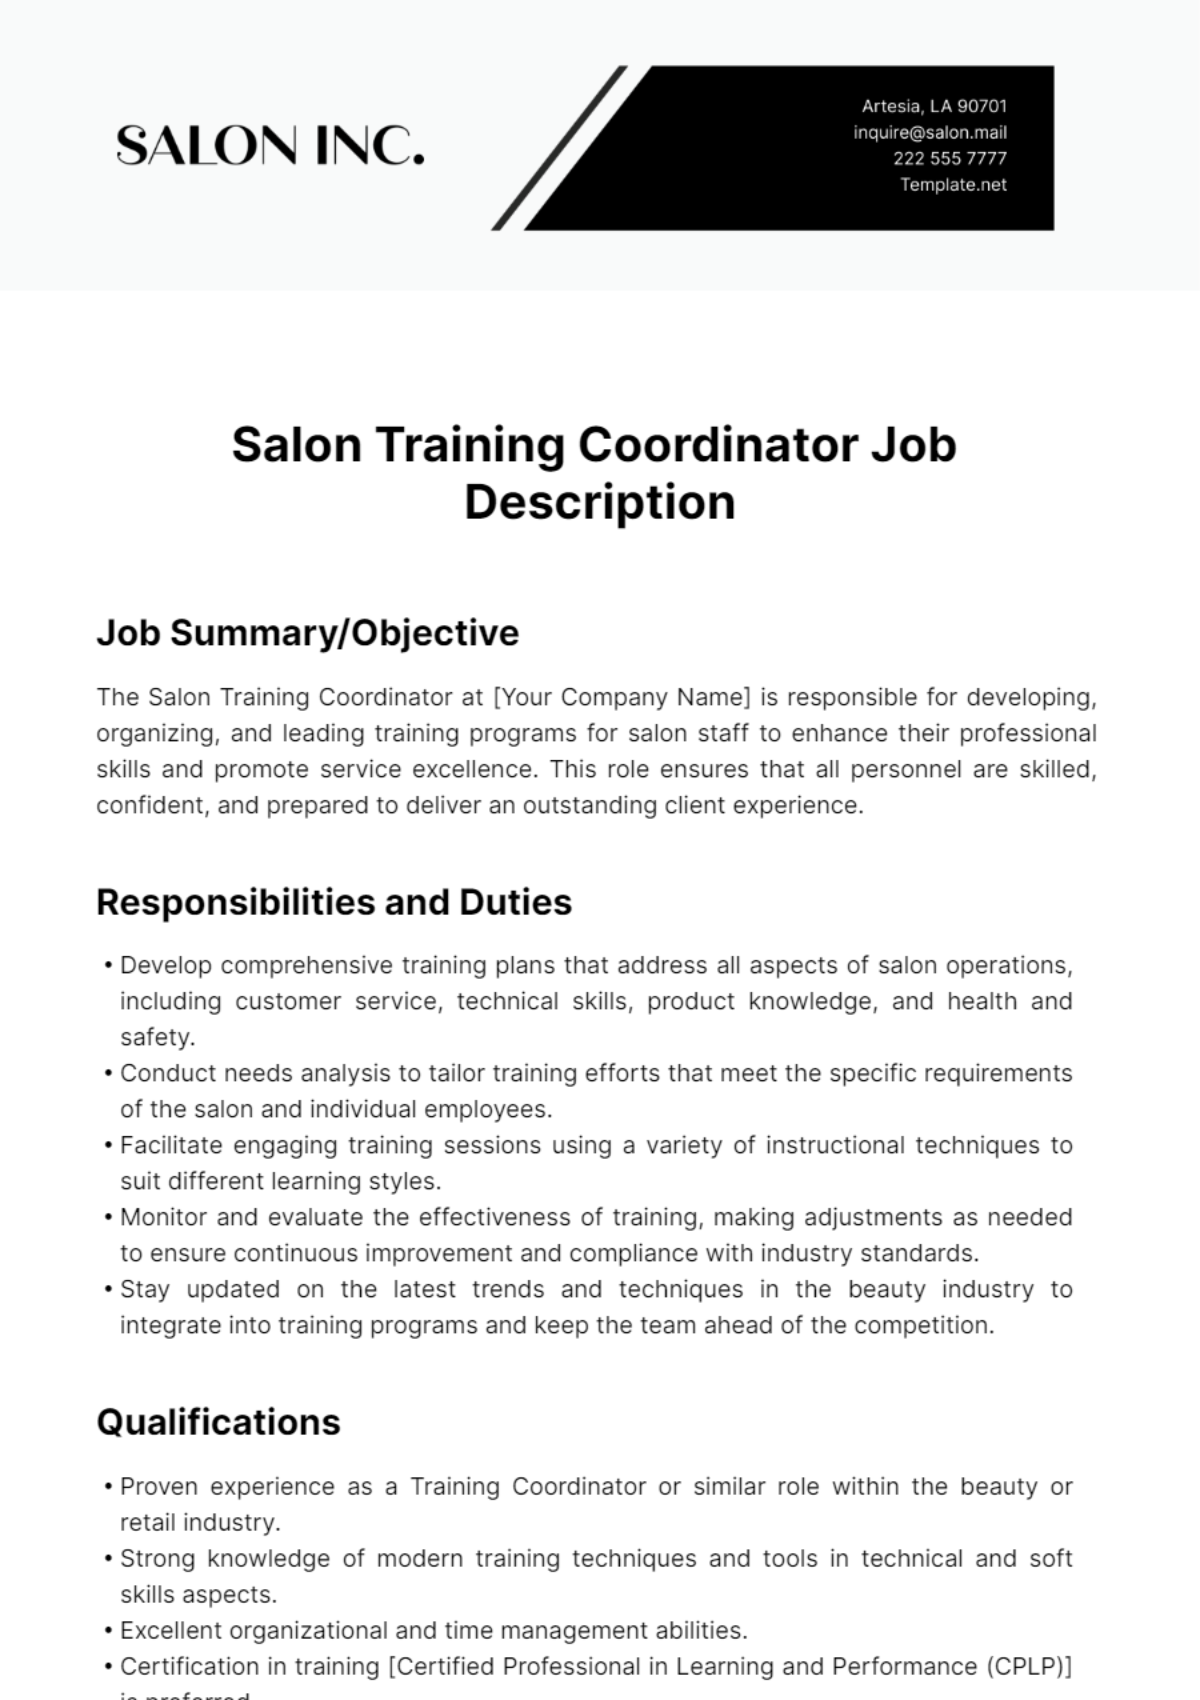 Free Salon Training Coordinator Job Description Template